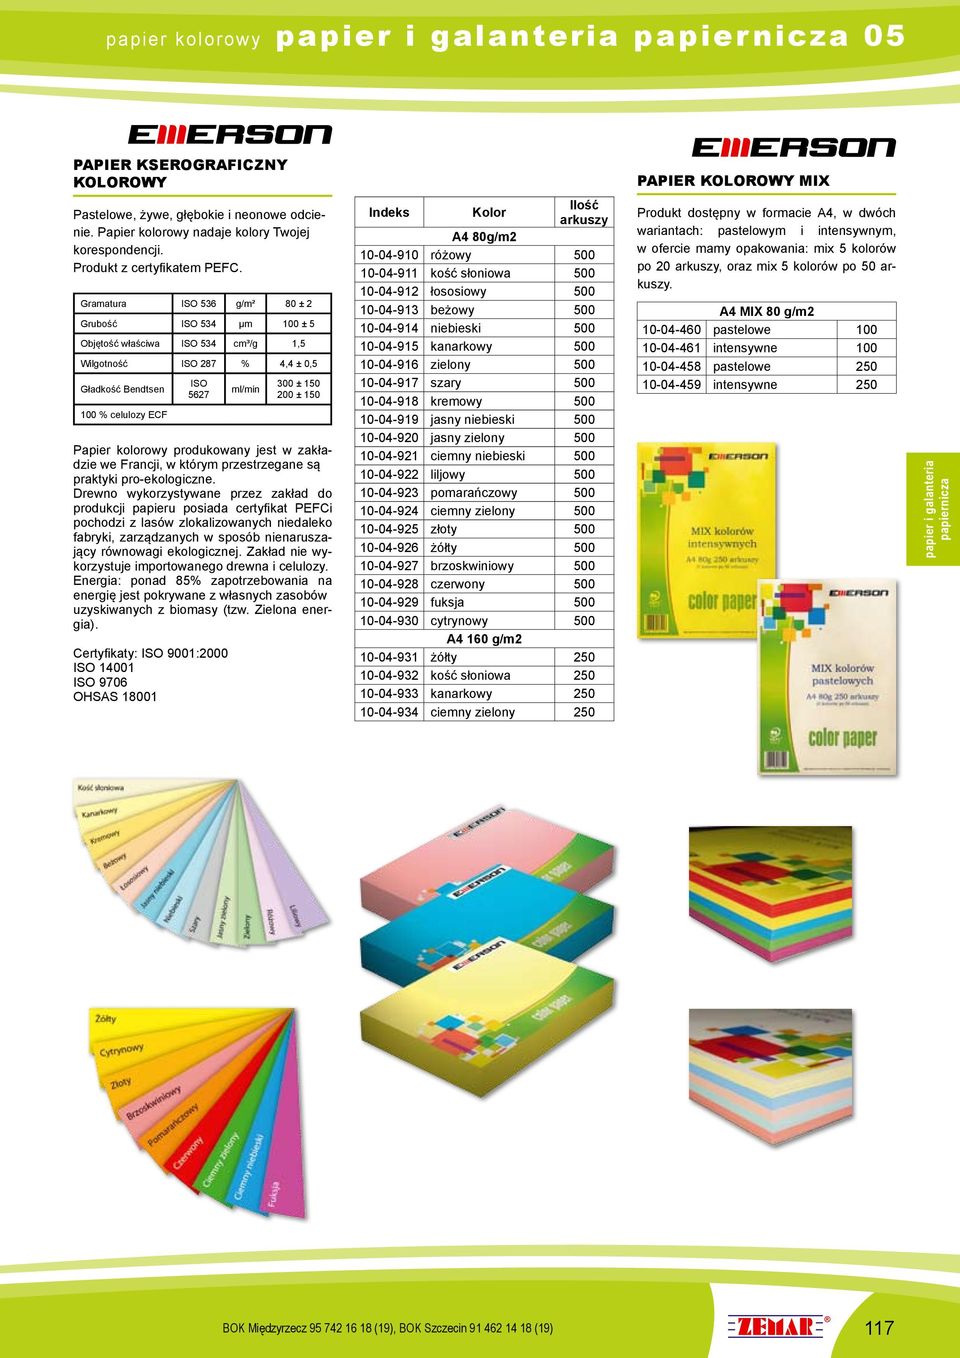 Papier kolorowy produkowany jest w zakładzie we Francji, w którym przestrzegane są praktyki pro-ekologiczne.